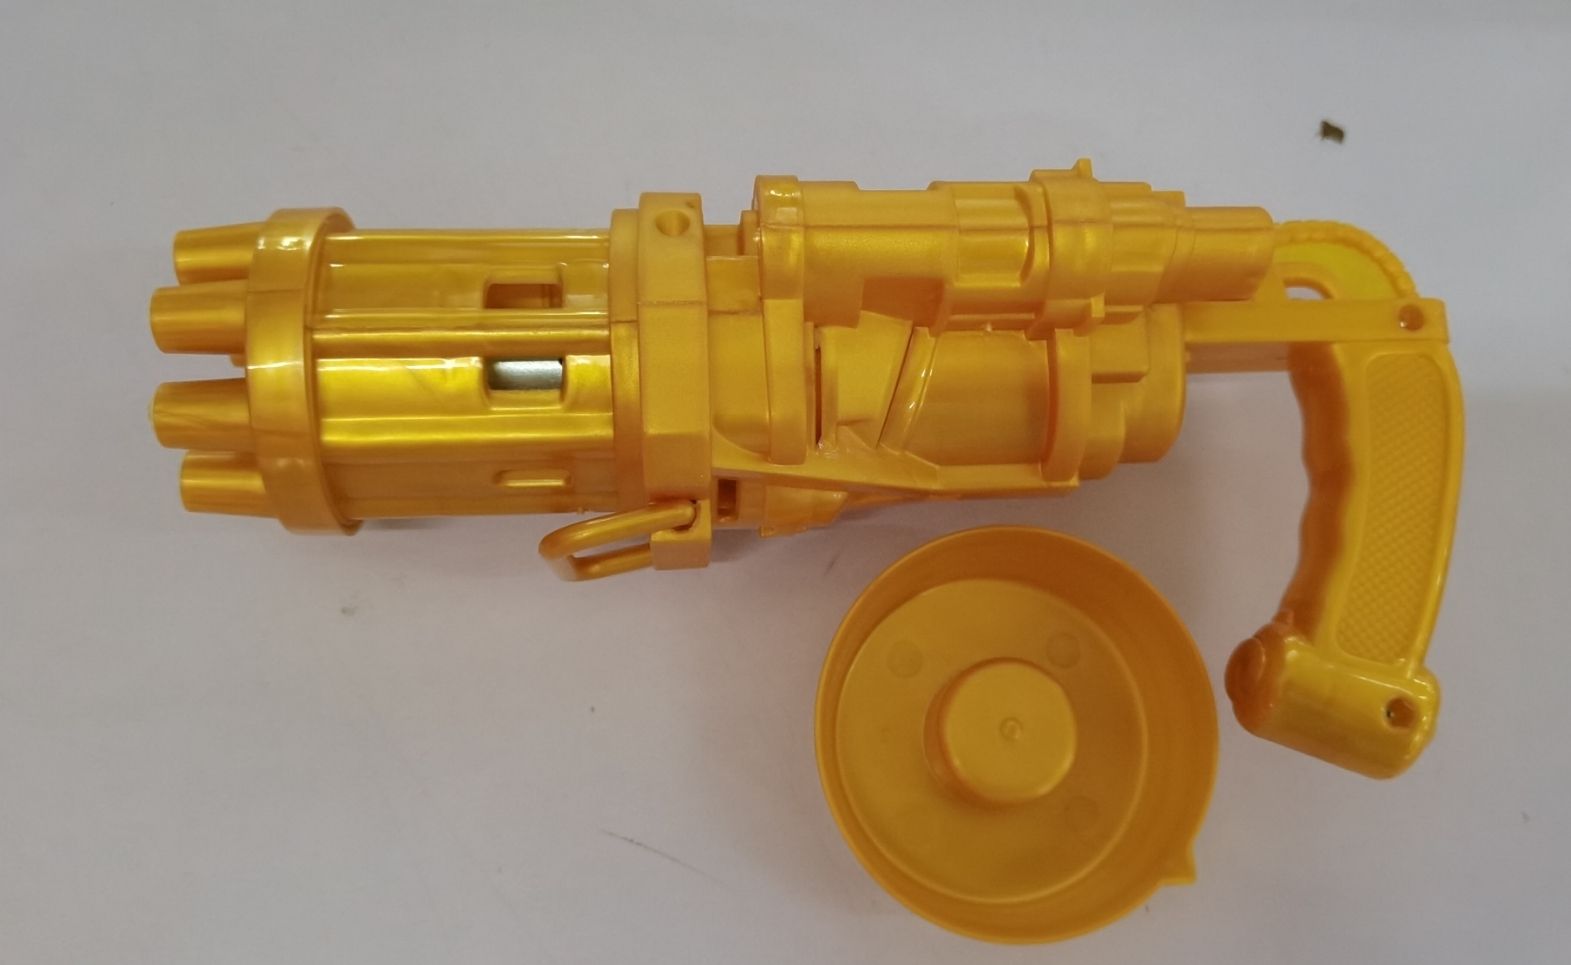 Bubble Blowing Gun Toy | Bubble Gun Machine Toys For Kids| Just Flushz